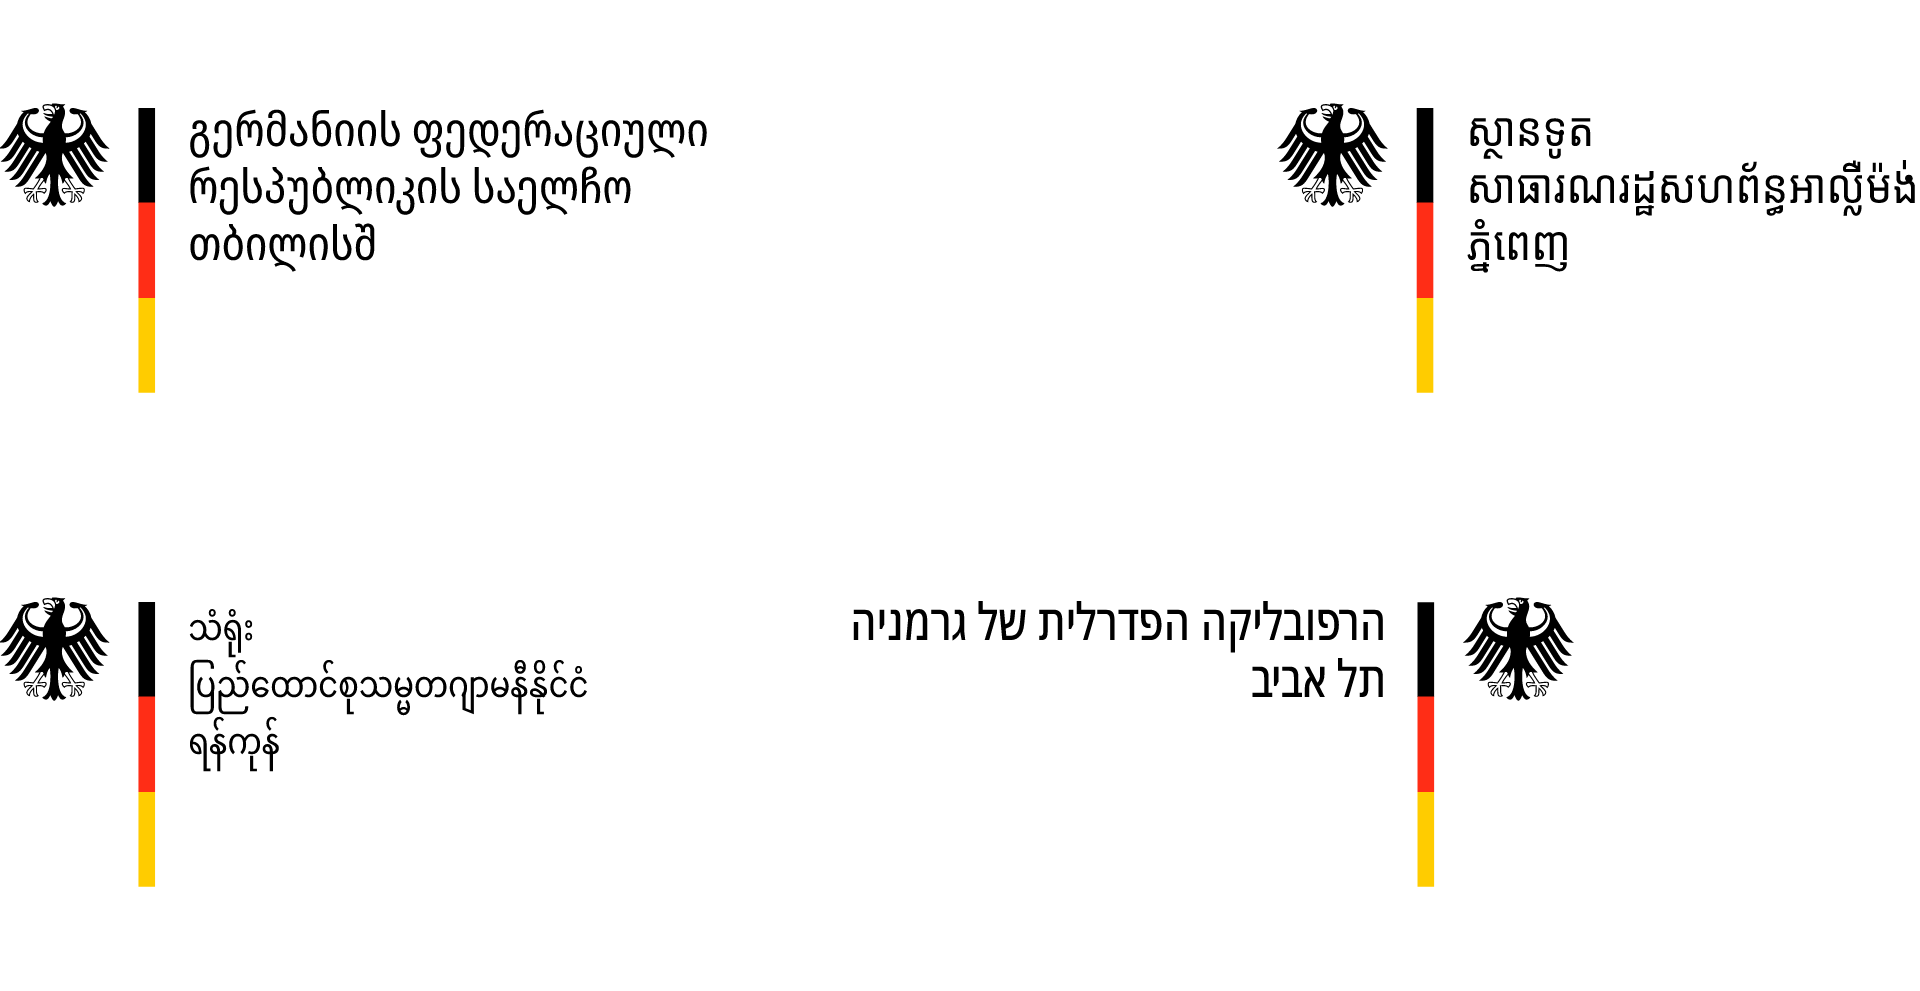 Georgische, kambodschanische, birmanische und hebräische Bildwortmarke